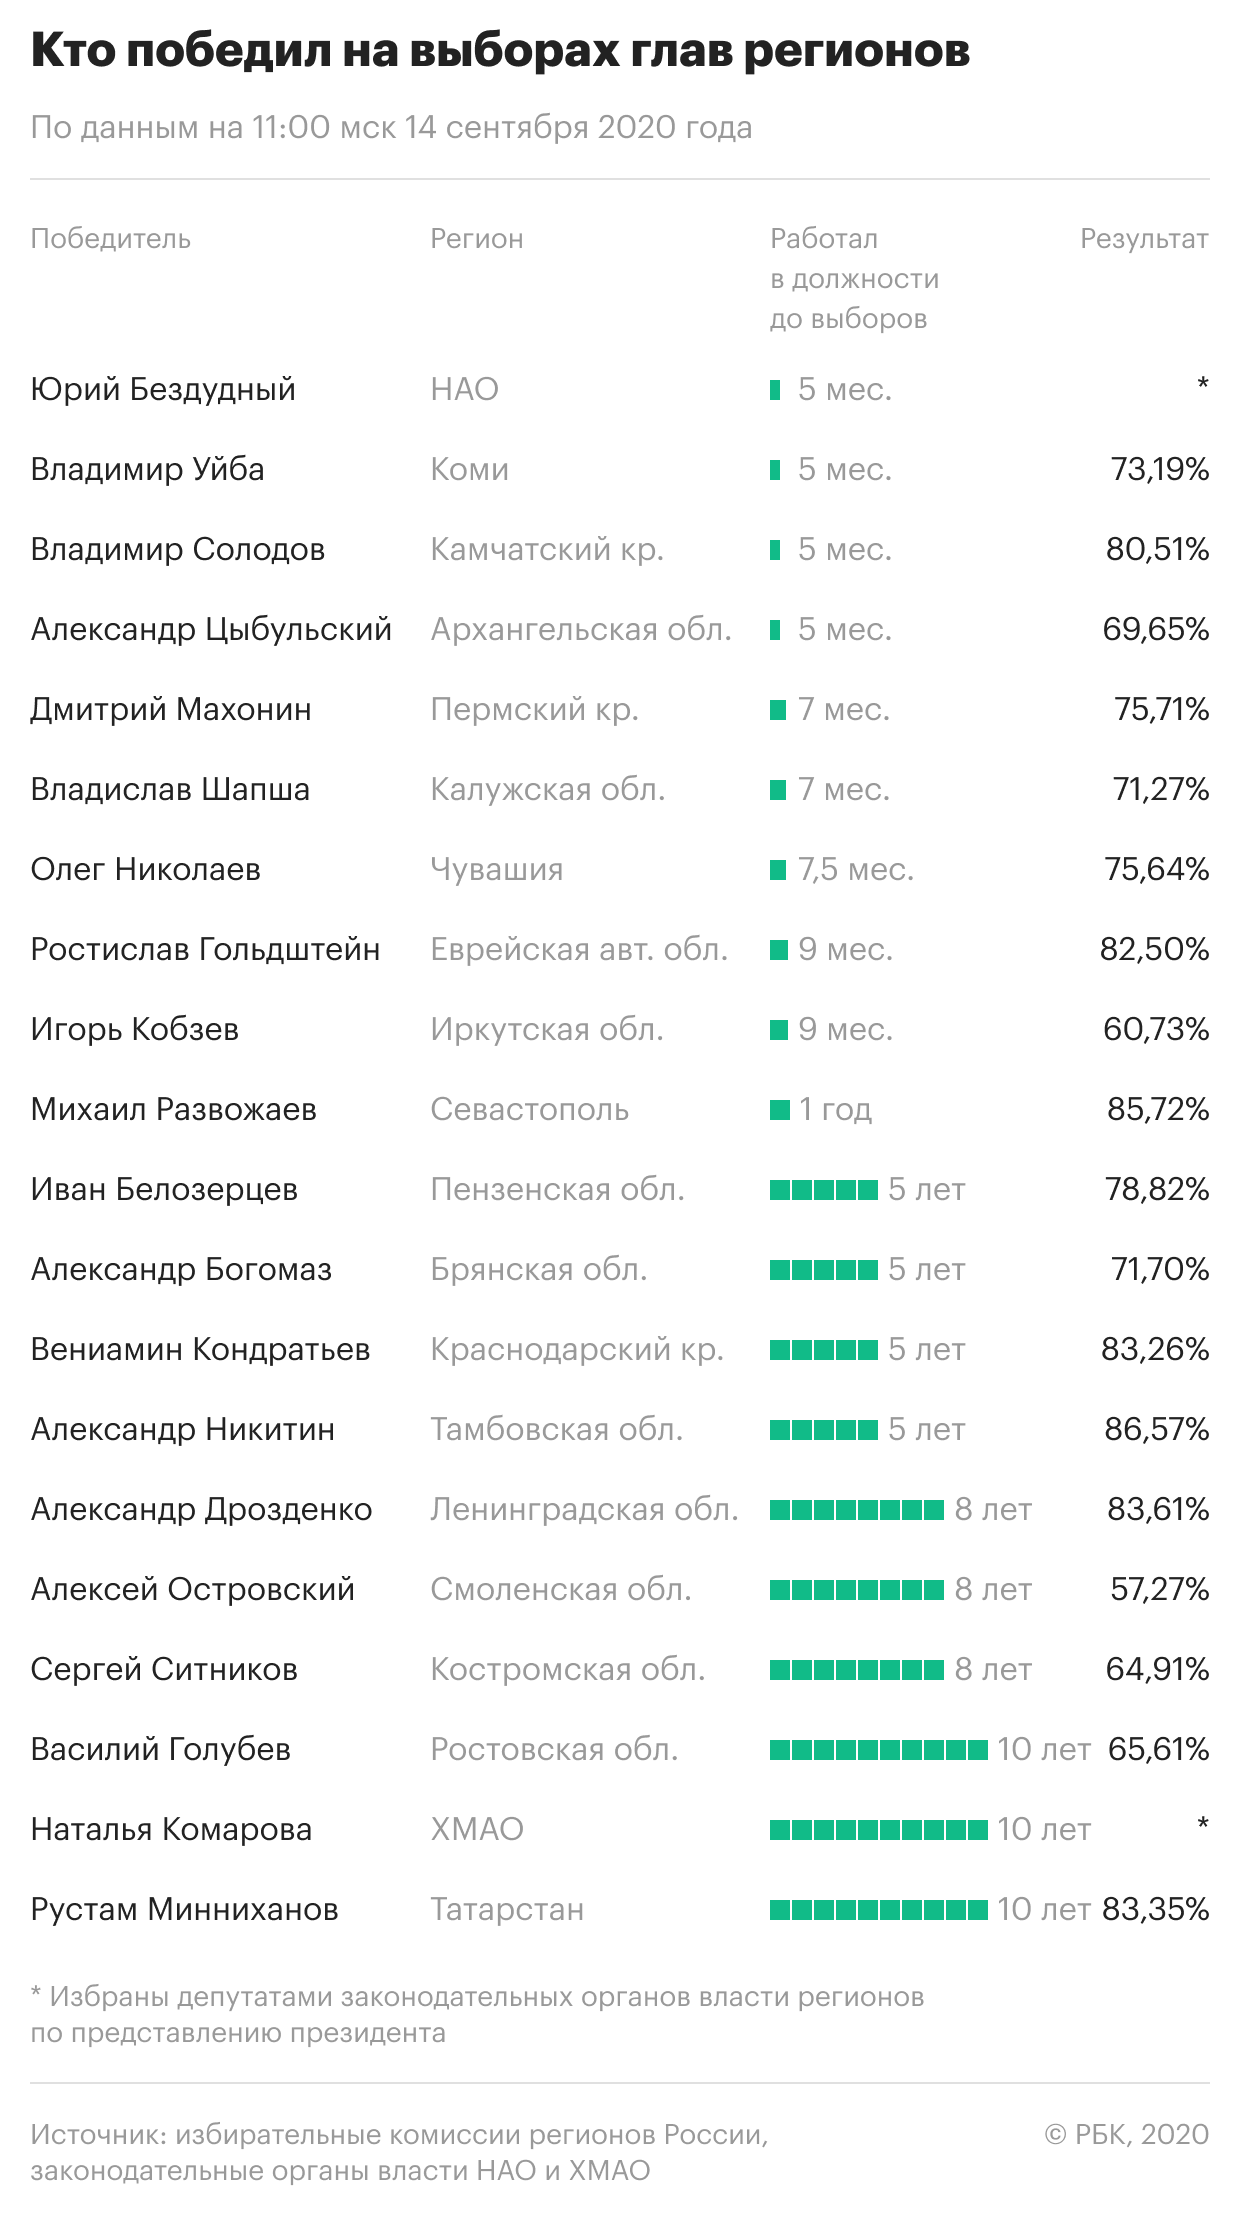 Рекорд губернаторов и сторонники Навального в гордумах Сибири